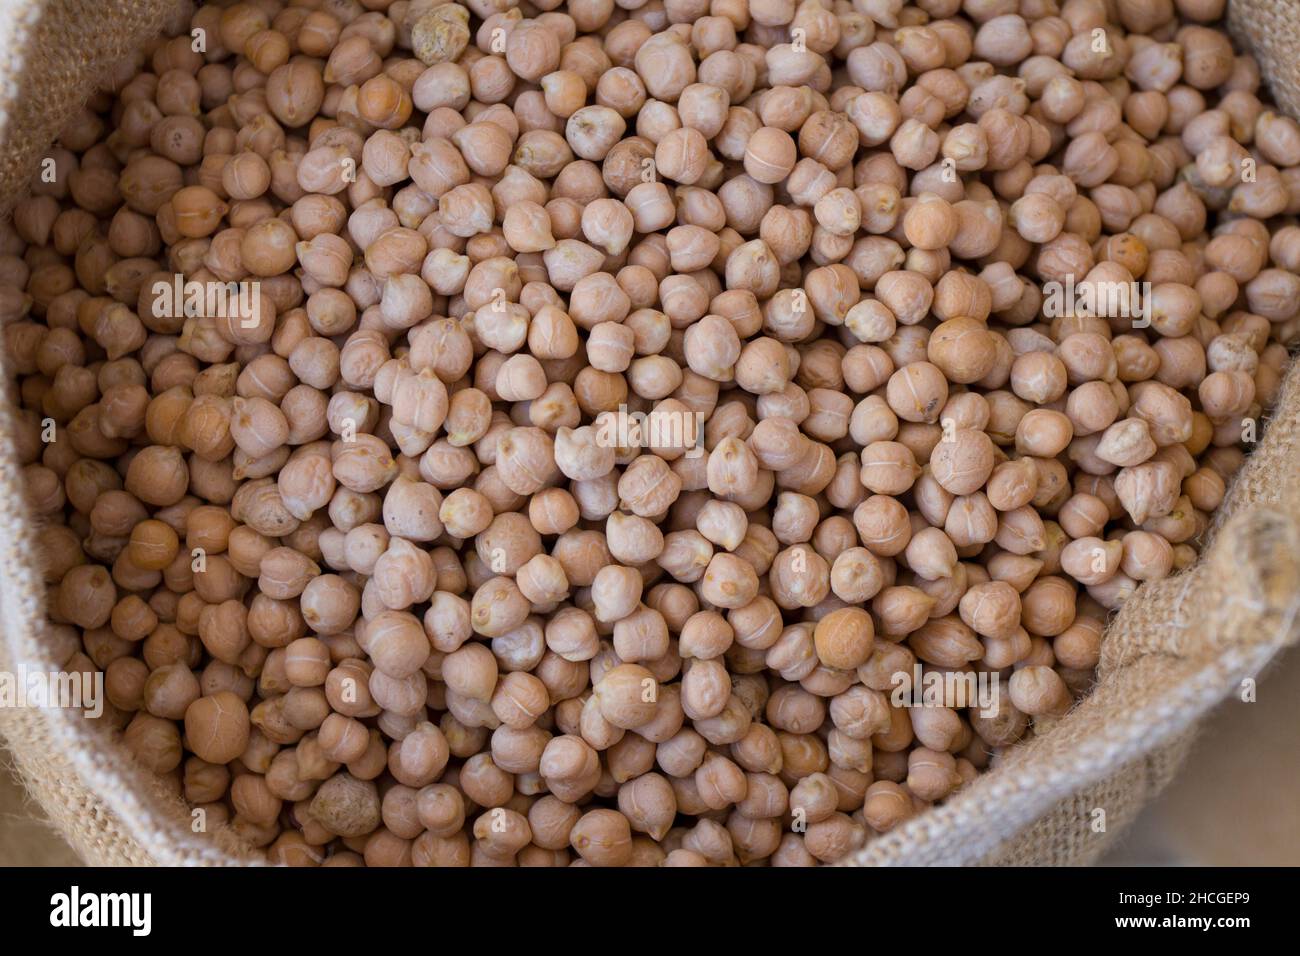 Saco de burlap con semillas de chickpea o chía crudas Foto de stock